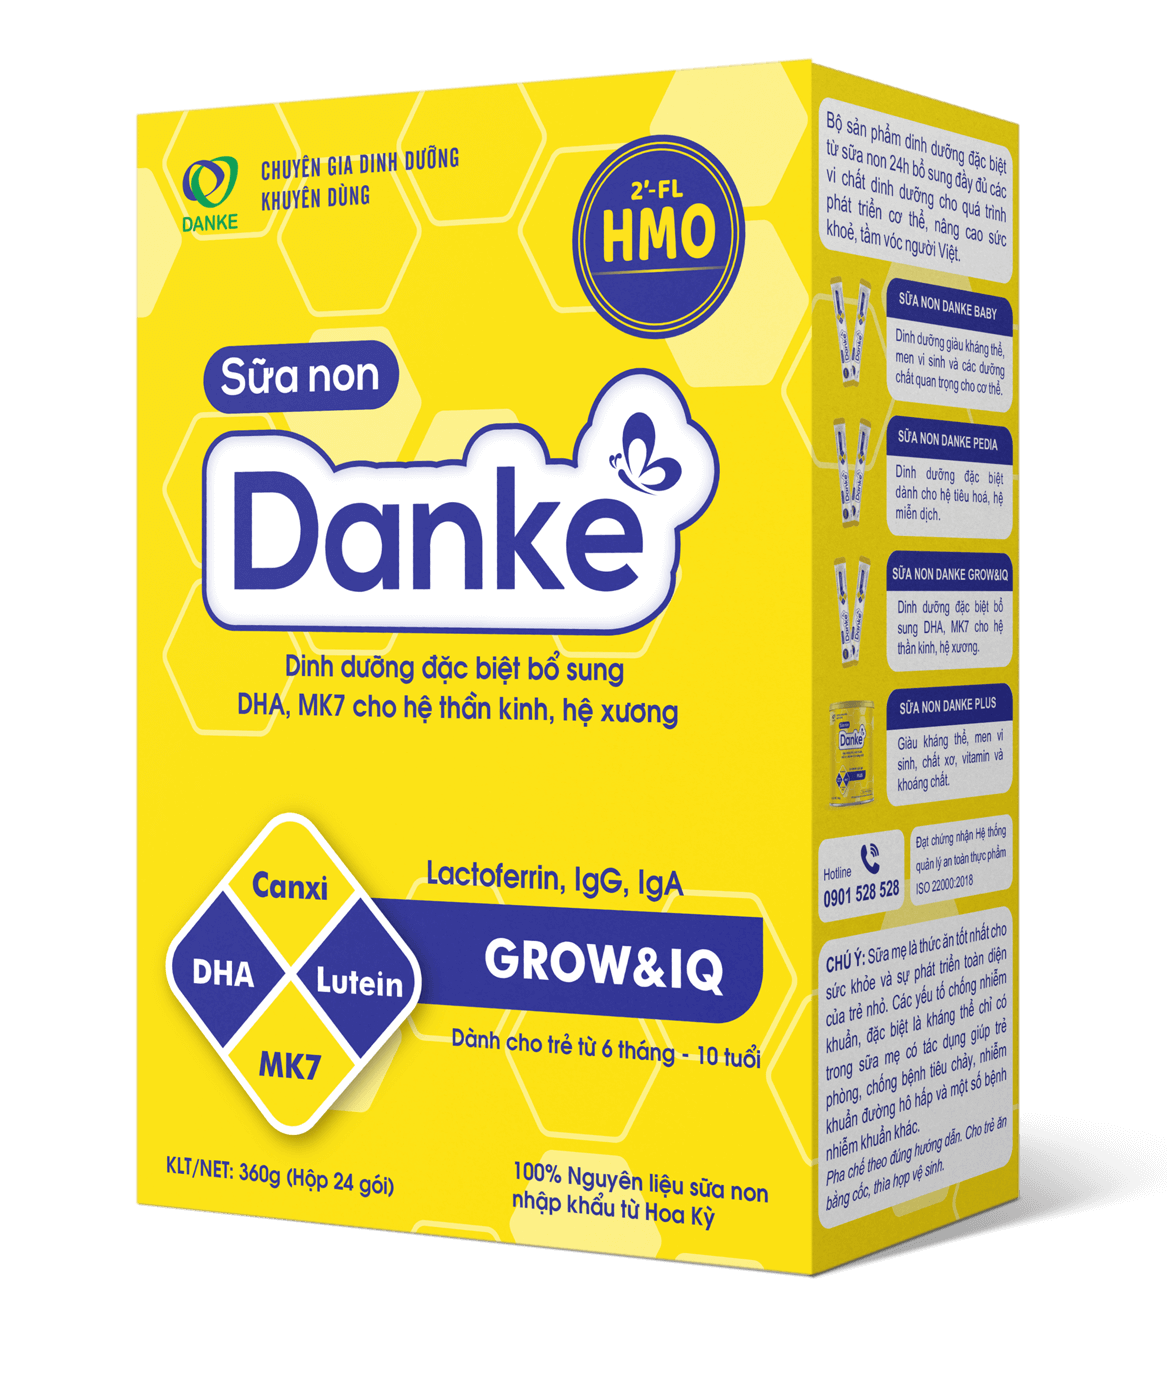 Sữa non Danke Grow & IQ